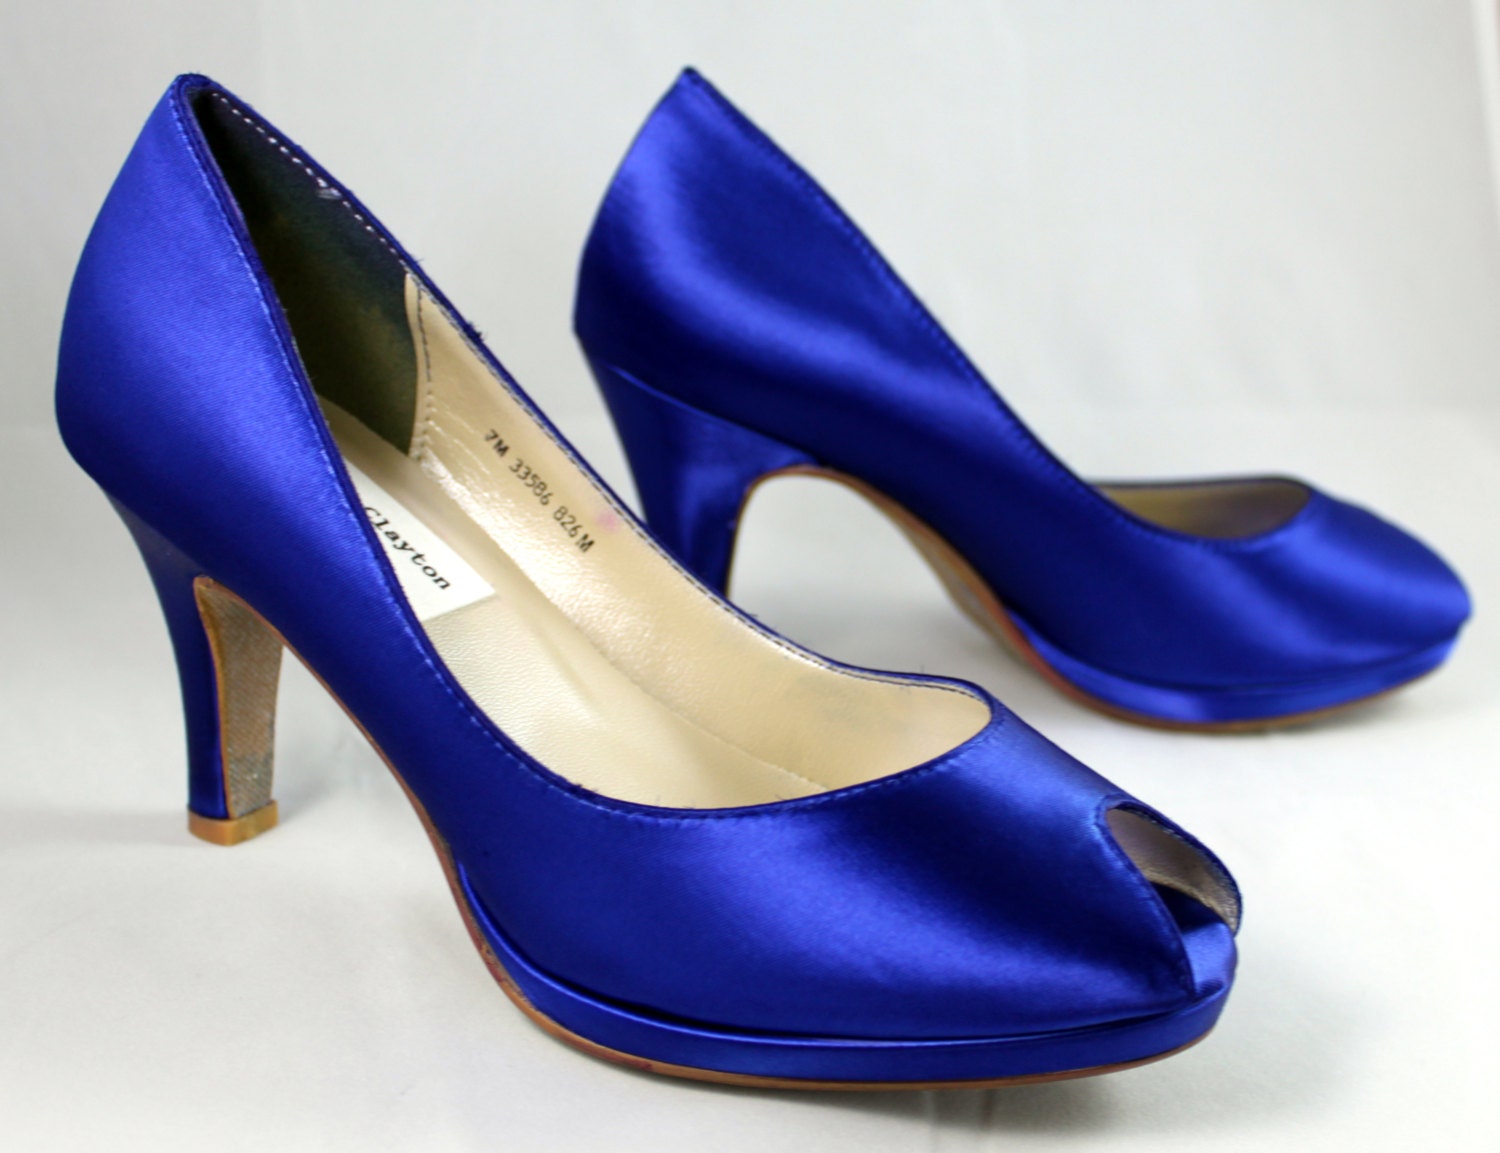 SALE Royal Blue platform wedding shoe Size 7 2.75 heel